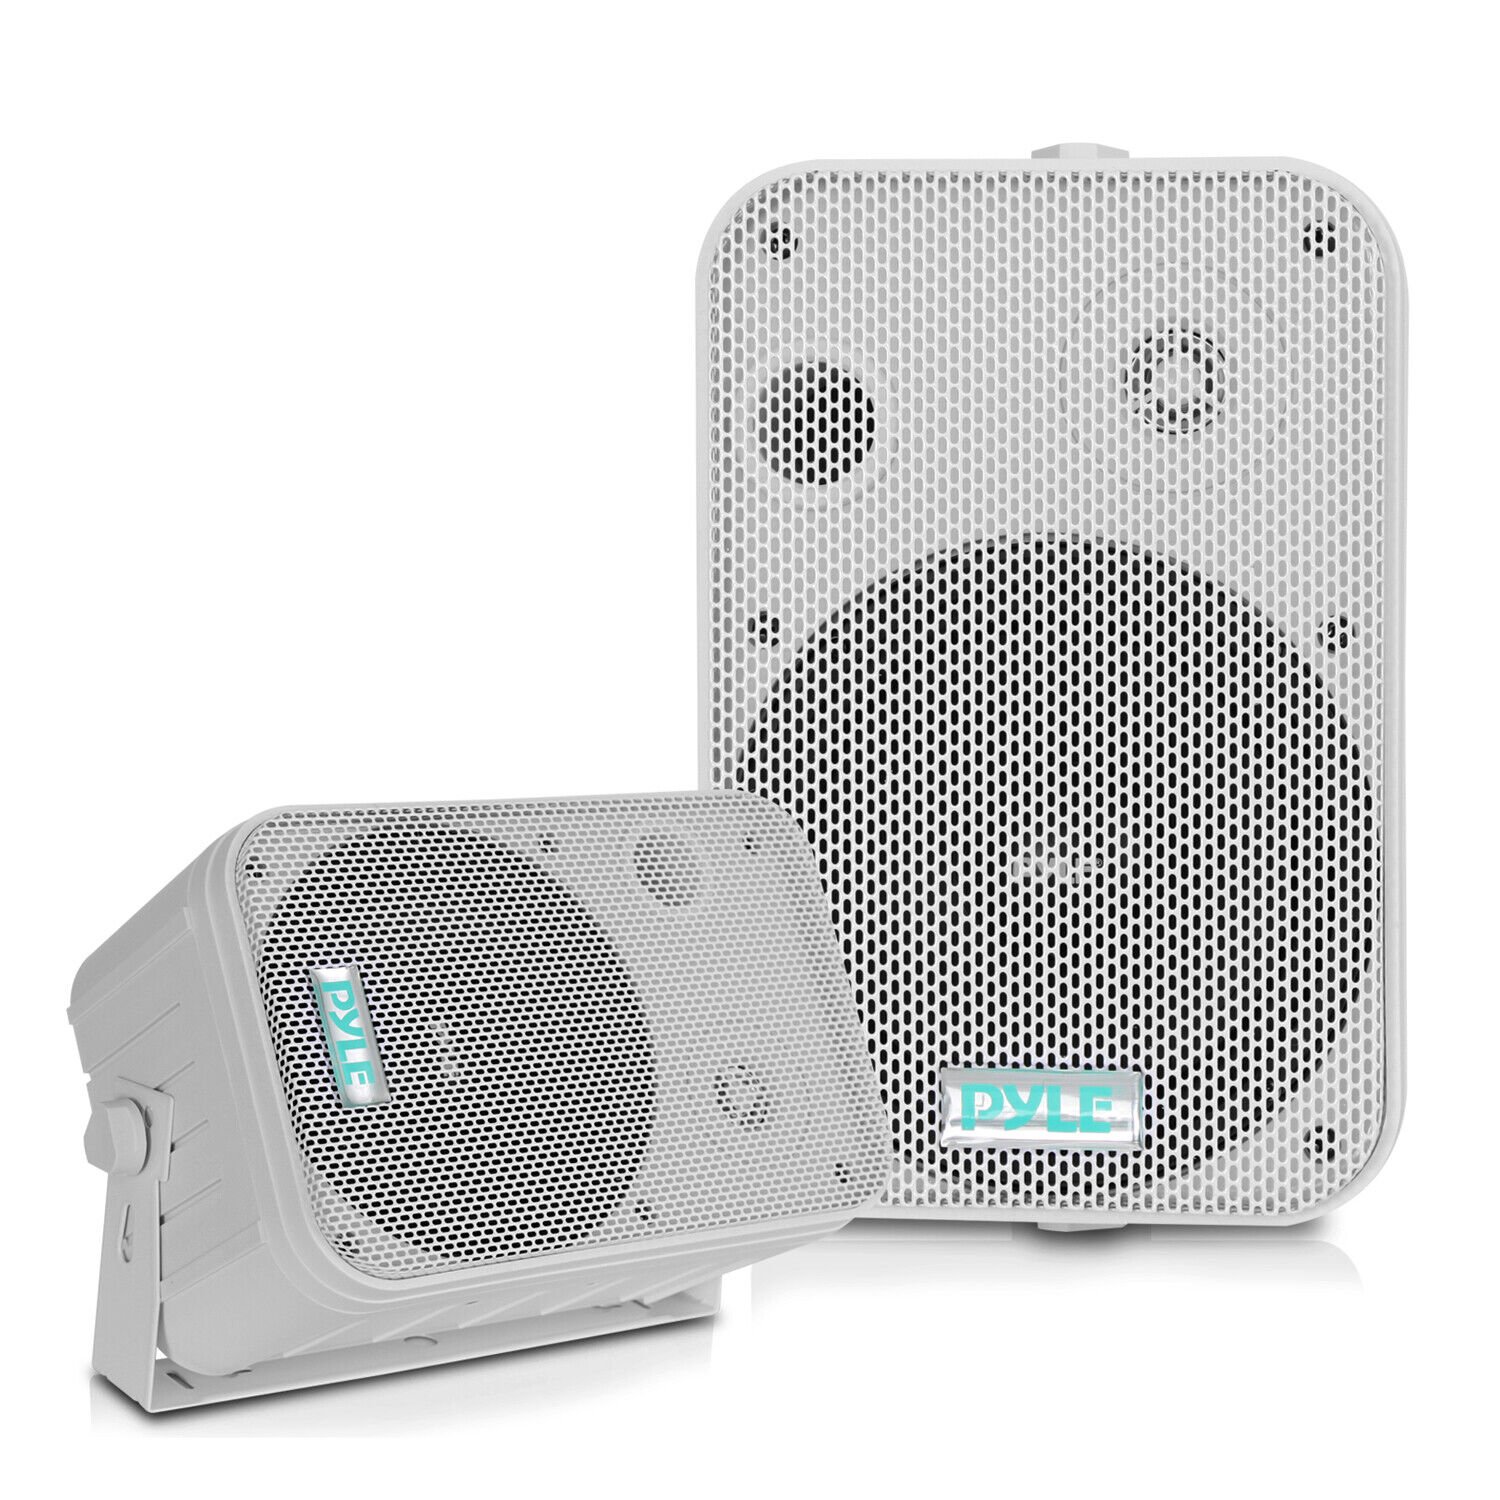 Pyle Home PDWR50W 6.5 Inch 500 Watt Indoor/Outdoor Waterproof Deck Speakers - image 1 of 9